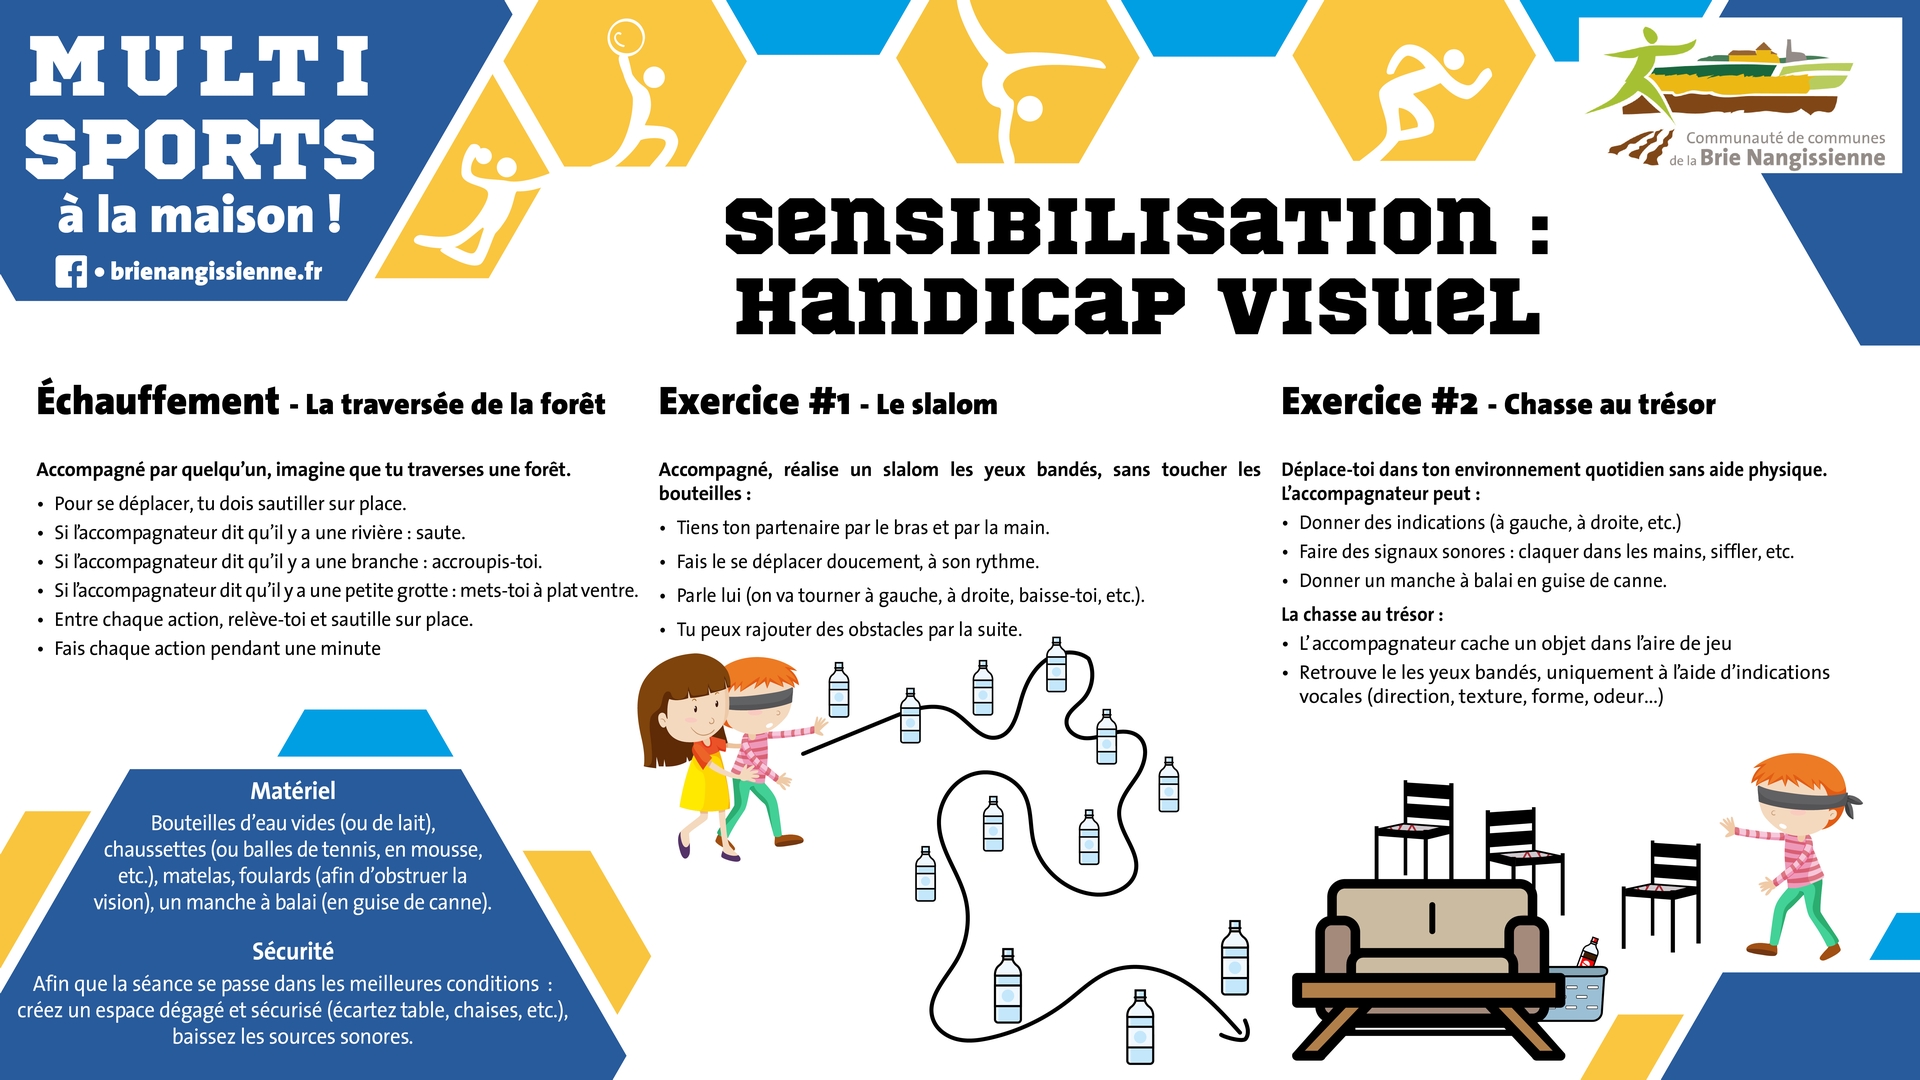 Activité #15 Sensibilisation handicap visuel 1 - FICHE